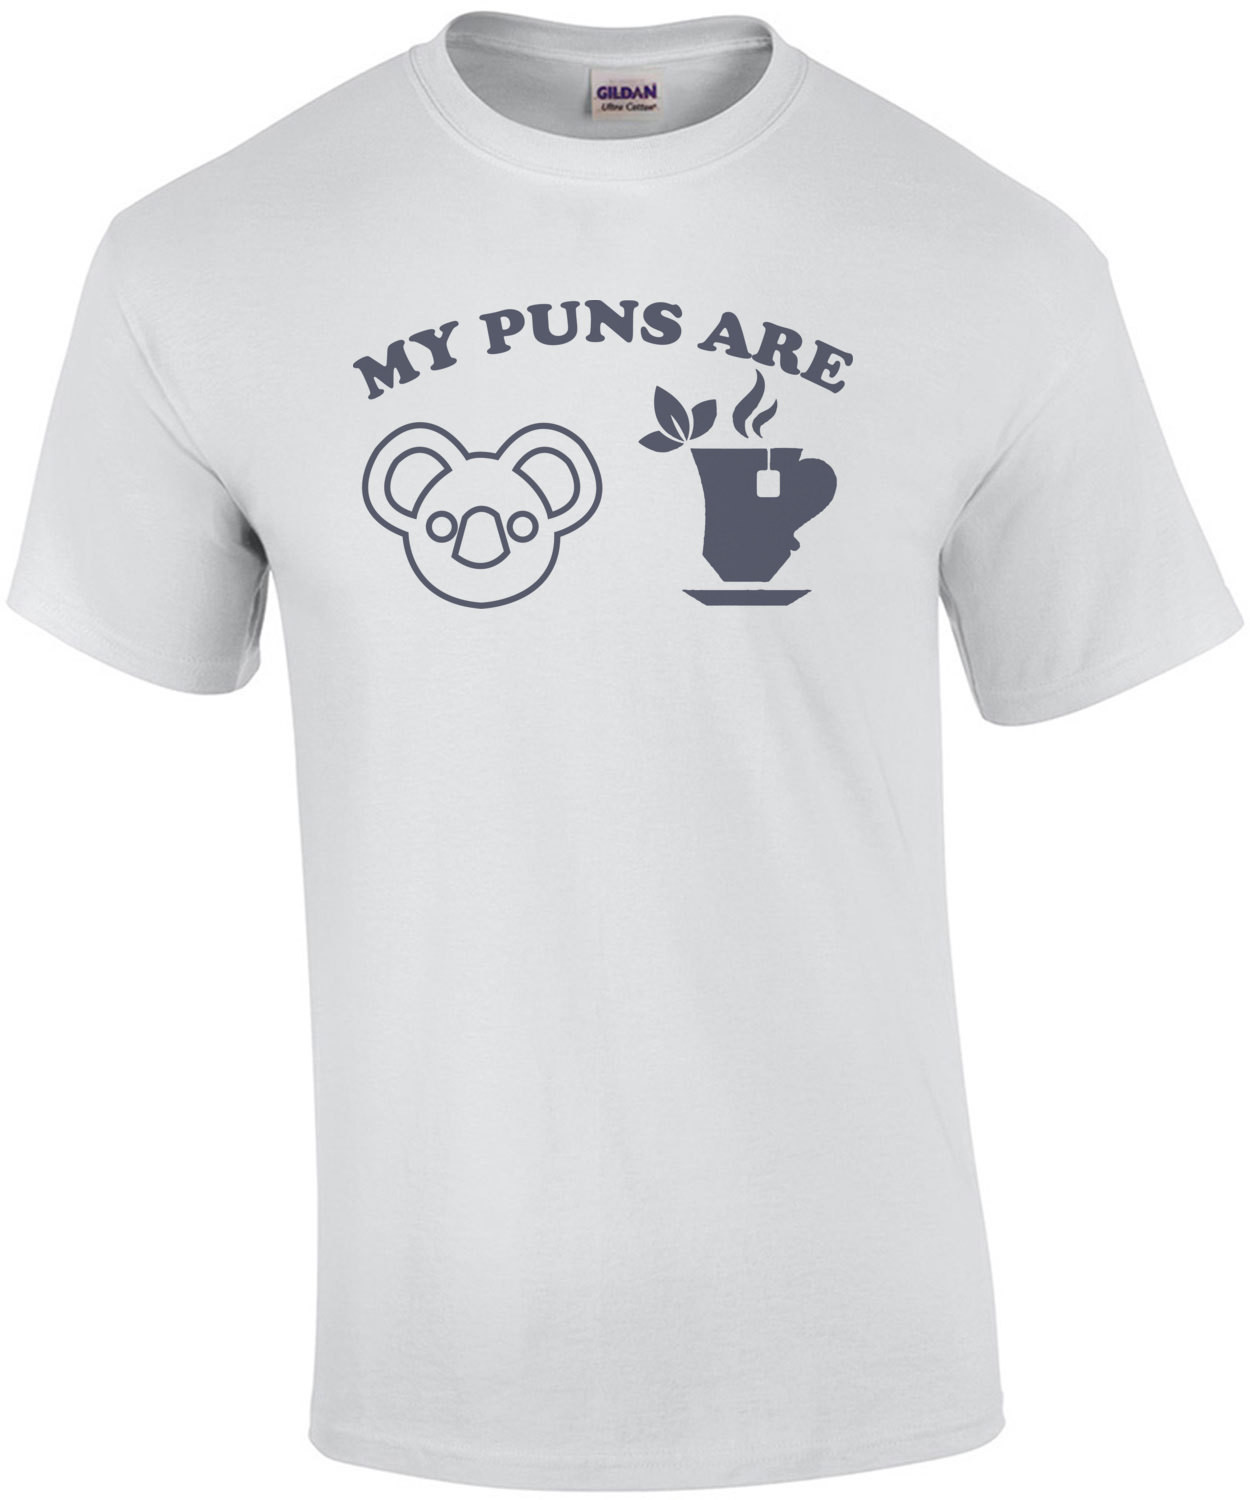 My puns are Koala Tea - Funny Pun T-Shirt